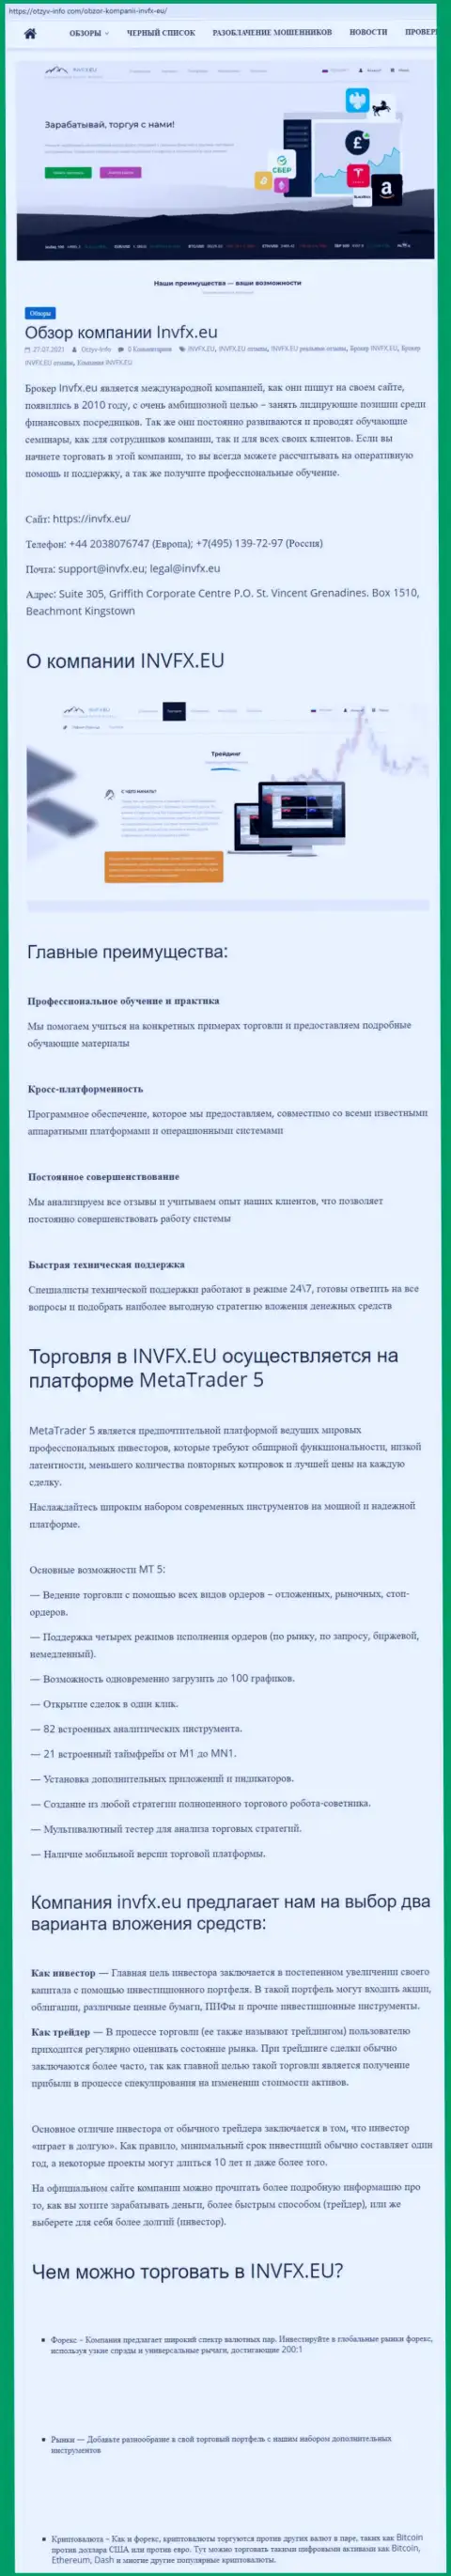 Сайт otzyv info com опубликовал статью об ФОРЕКС-компании INVFX Eu